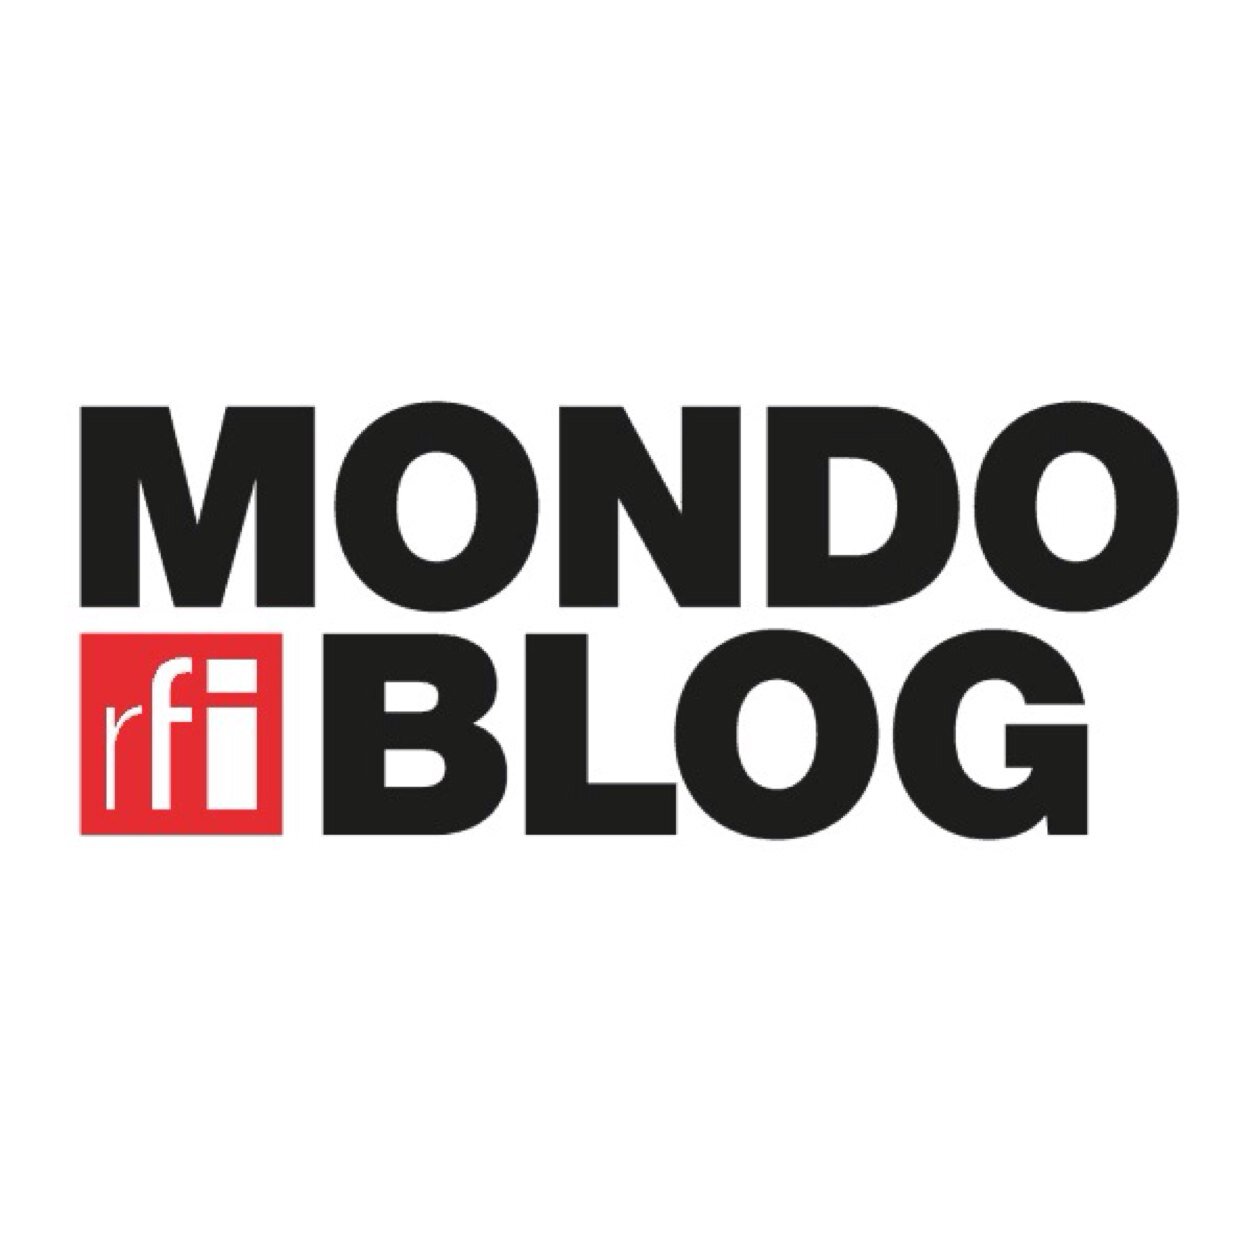 Mondoblog est la communauté des blogueuses et blogueurs francophones de @RFI. Créée en 2010 par l'@atelier_medias, elle est portée par @rfi
Insta: mondoblog